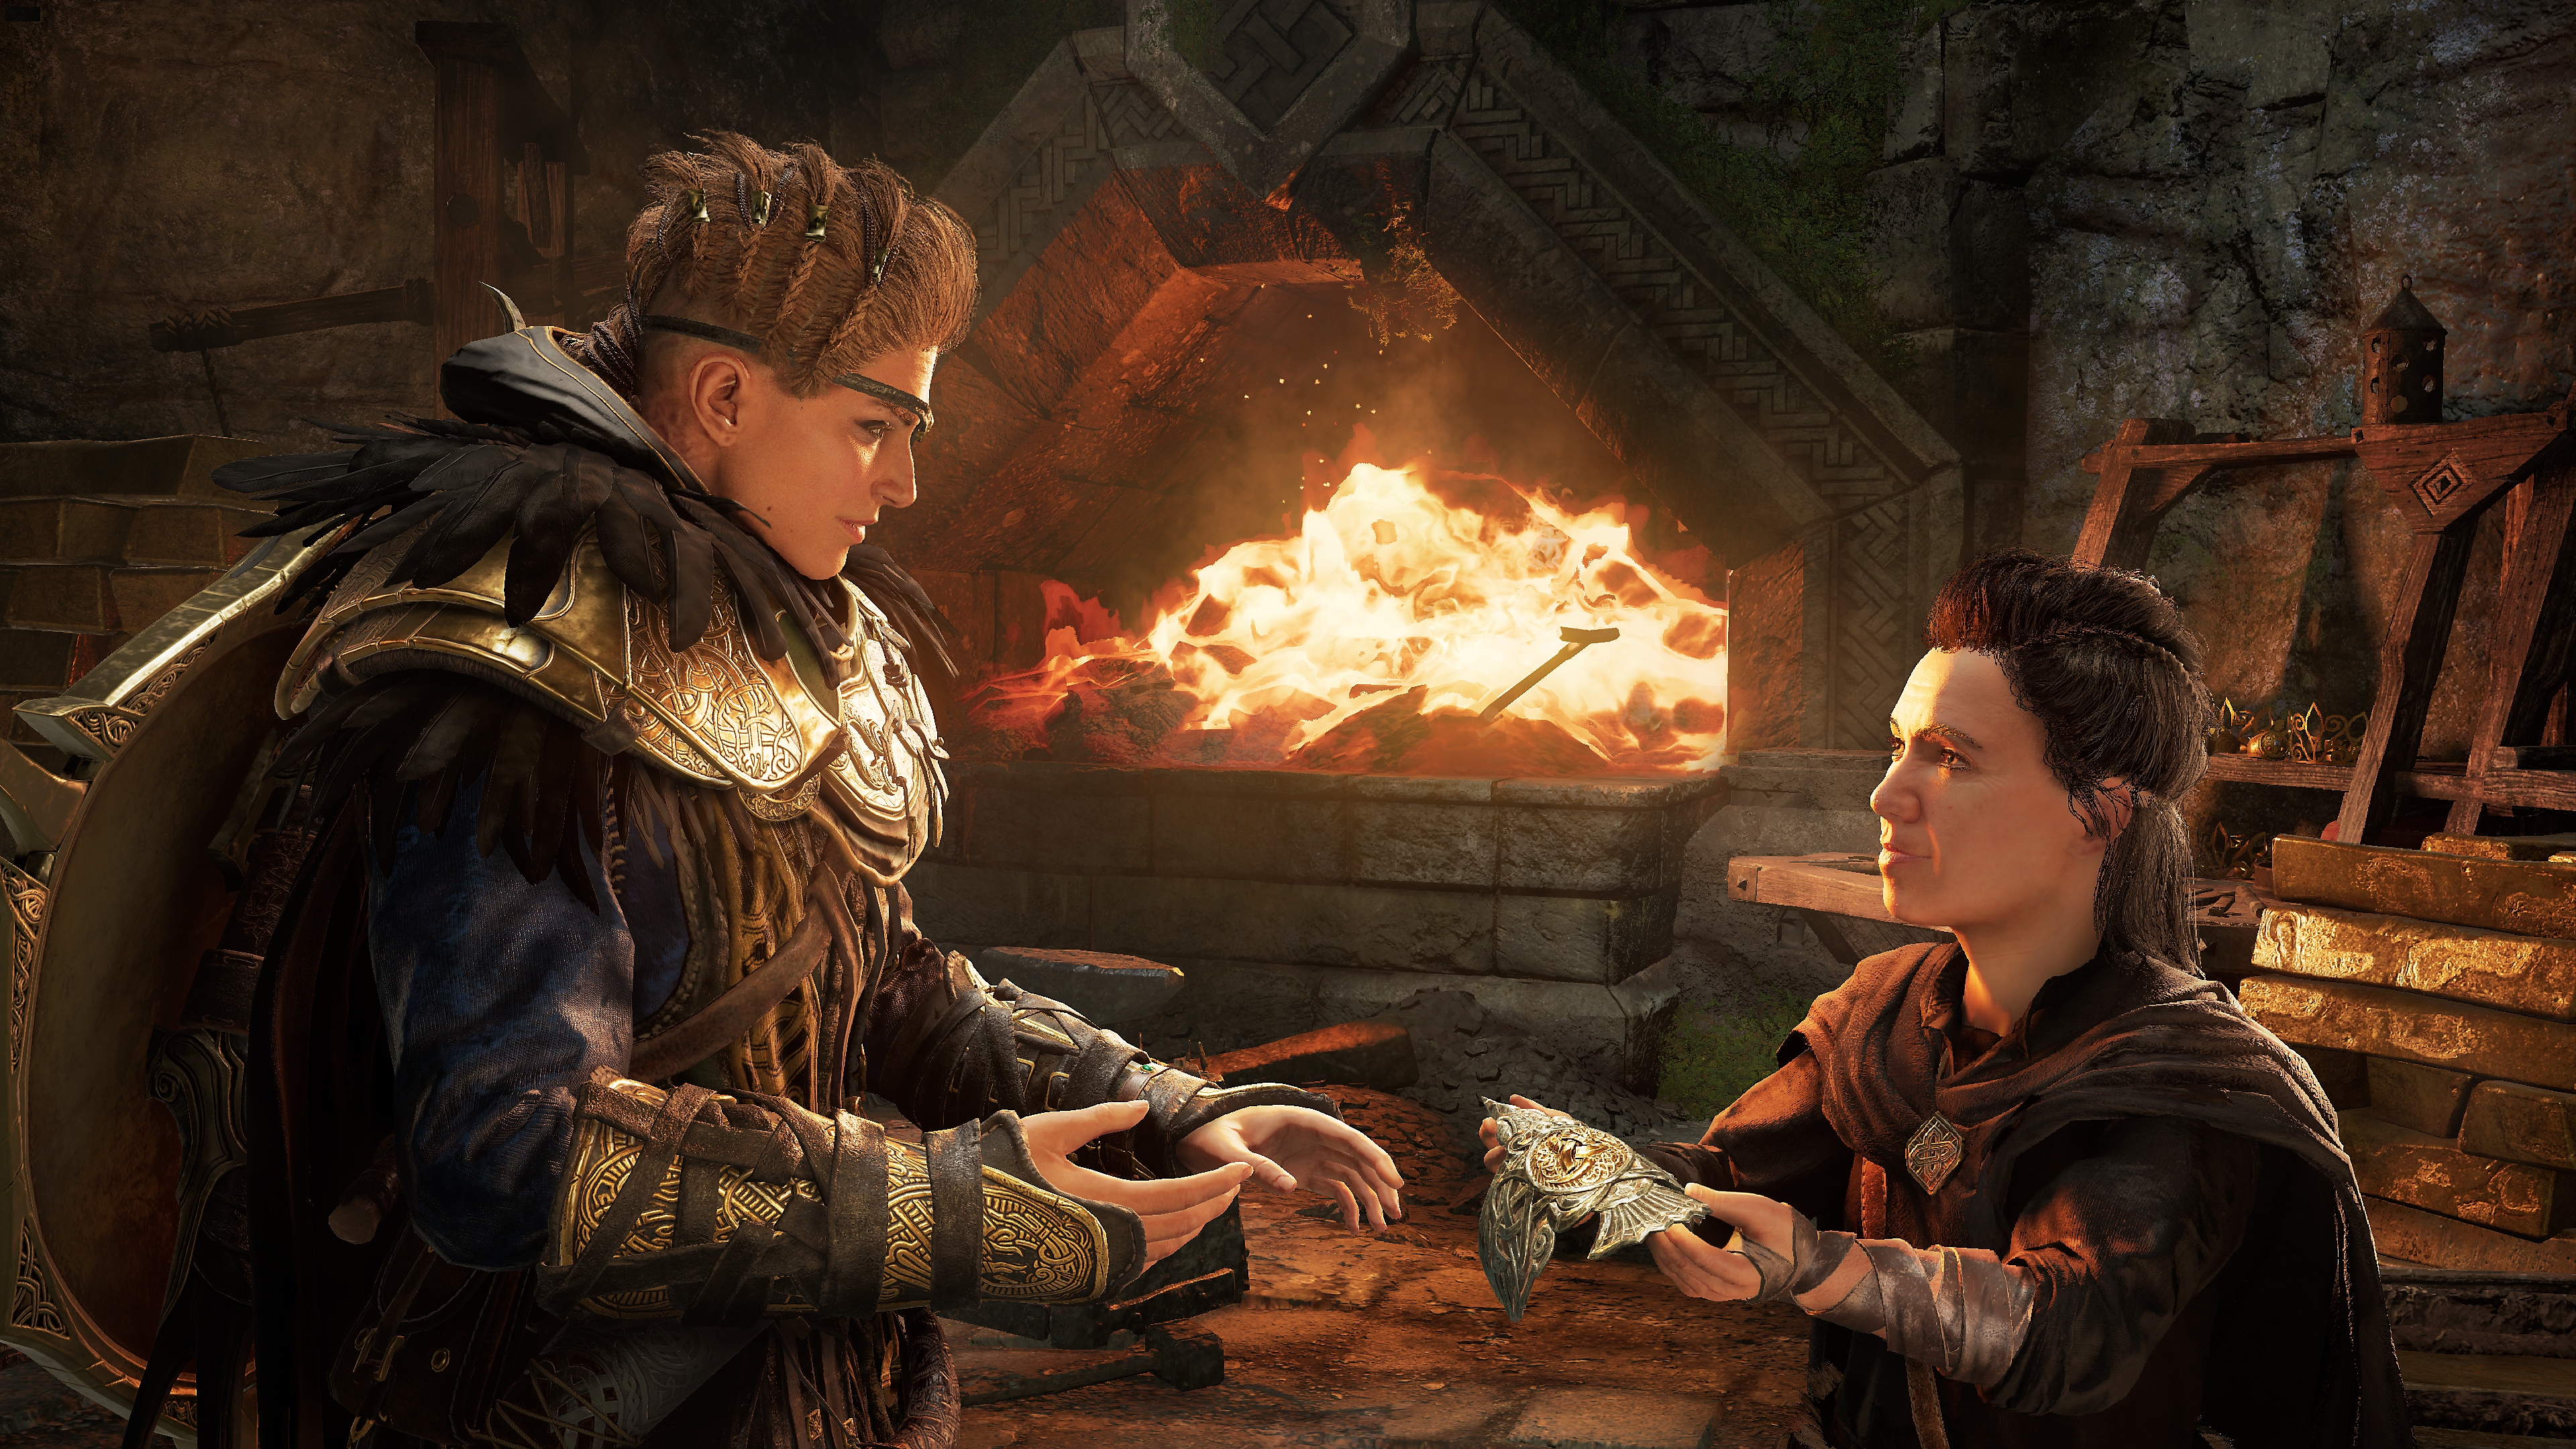 Assassin's Creed Valhalla 라그나로크의 서막 스크린샷, 드워프 아군으로부터 아이템을 받는 메인 캐릭터